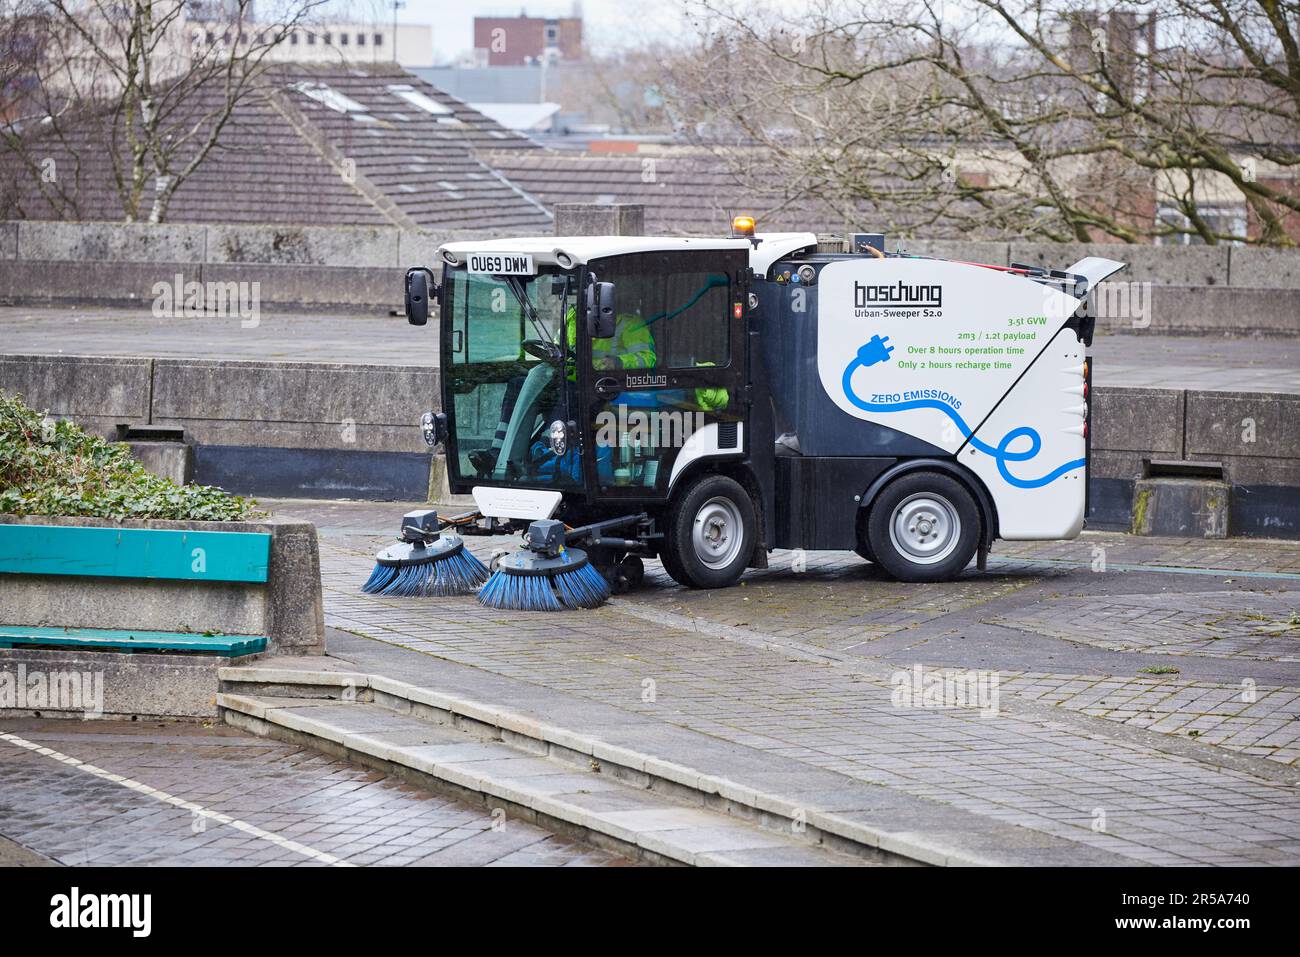 Elektrische Kehrmaschine für kleine Straßen, Urban-Sweeper S2,0, elektrisch angetrieben, emissionsfrei Stockfoto